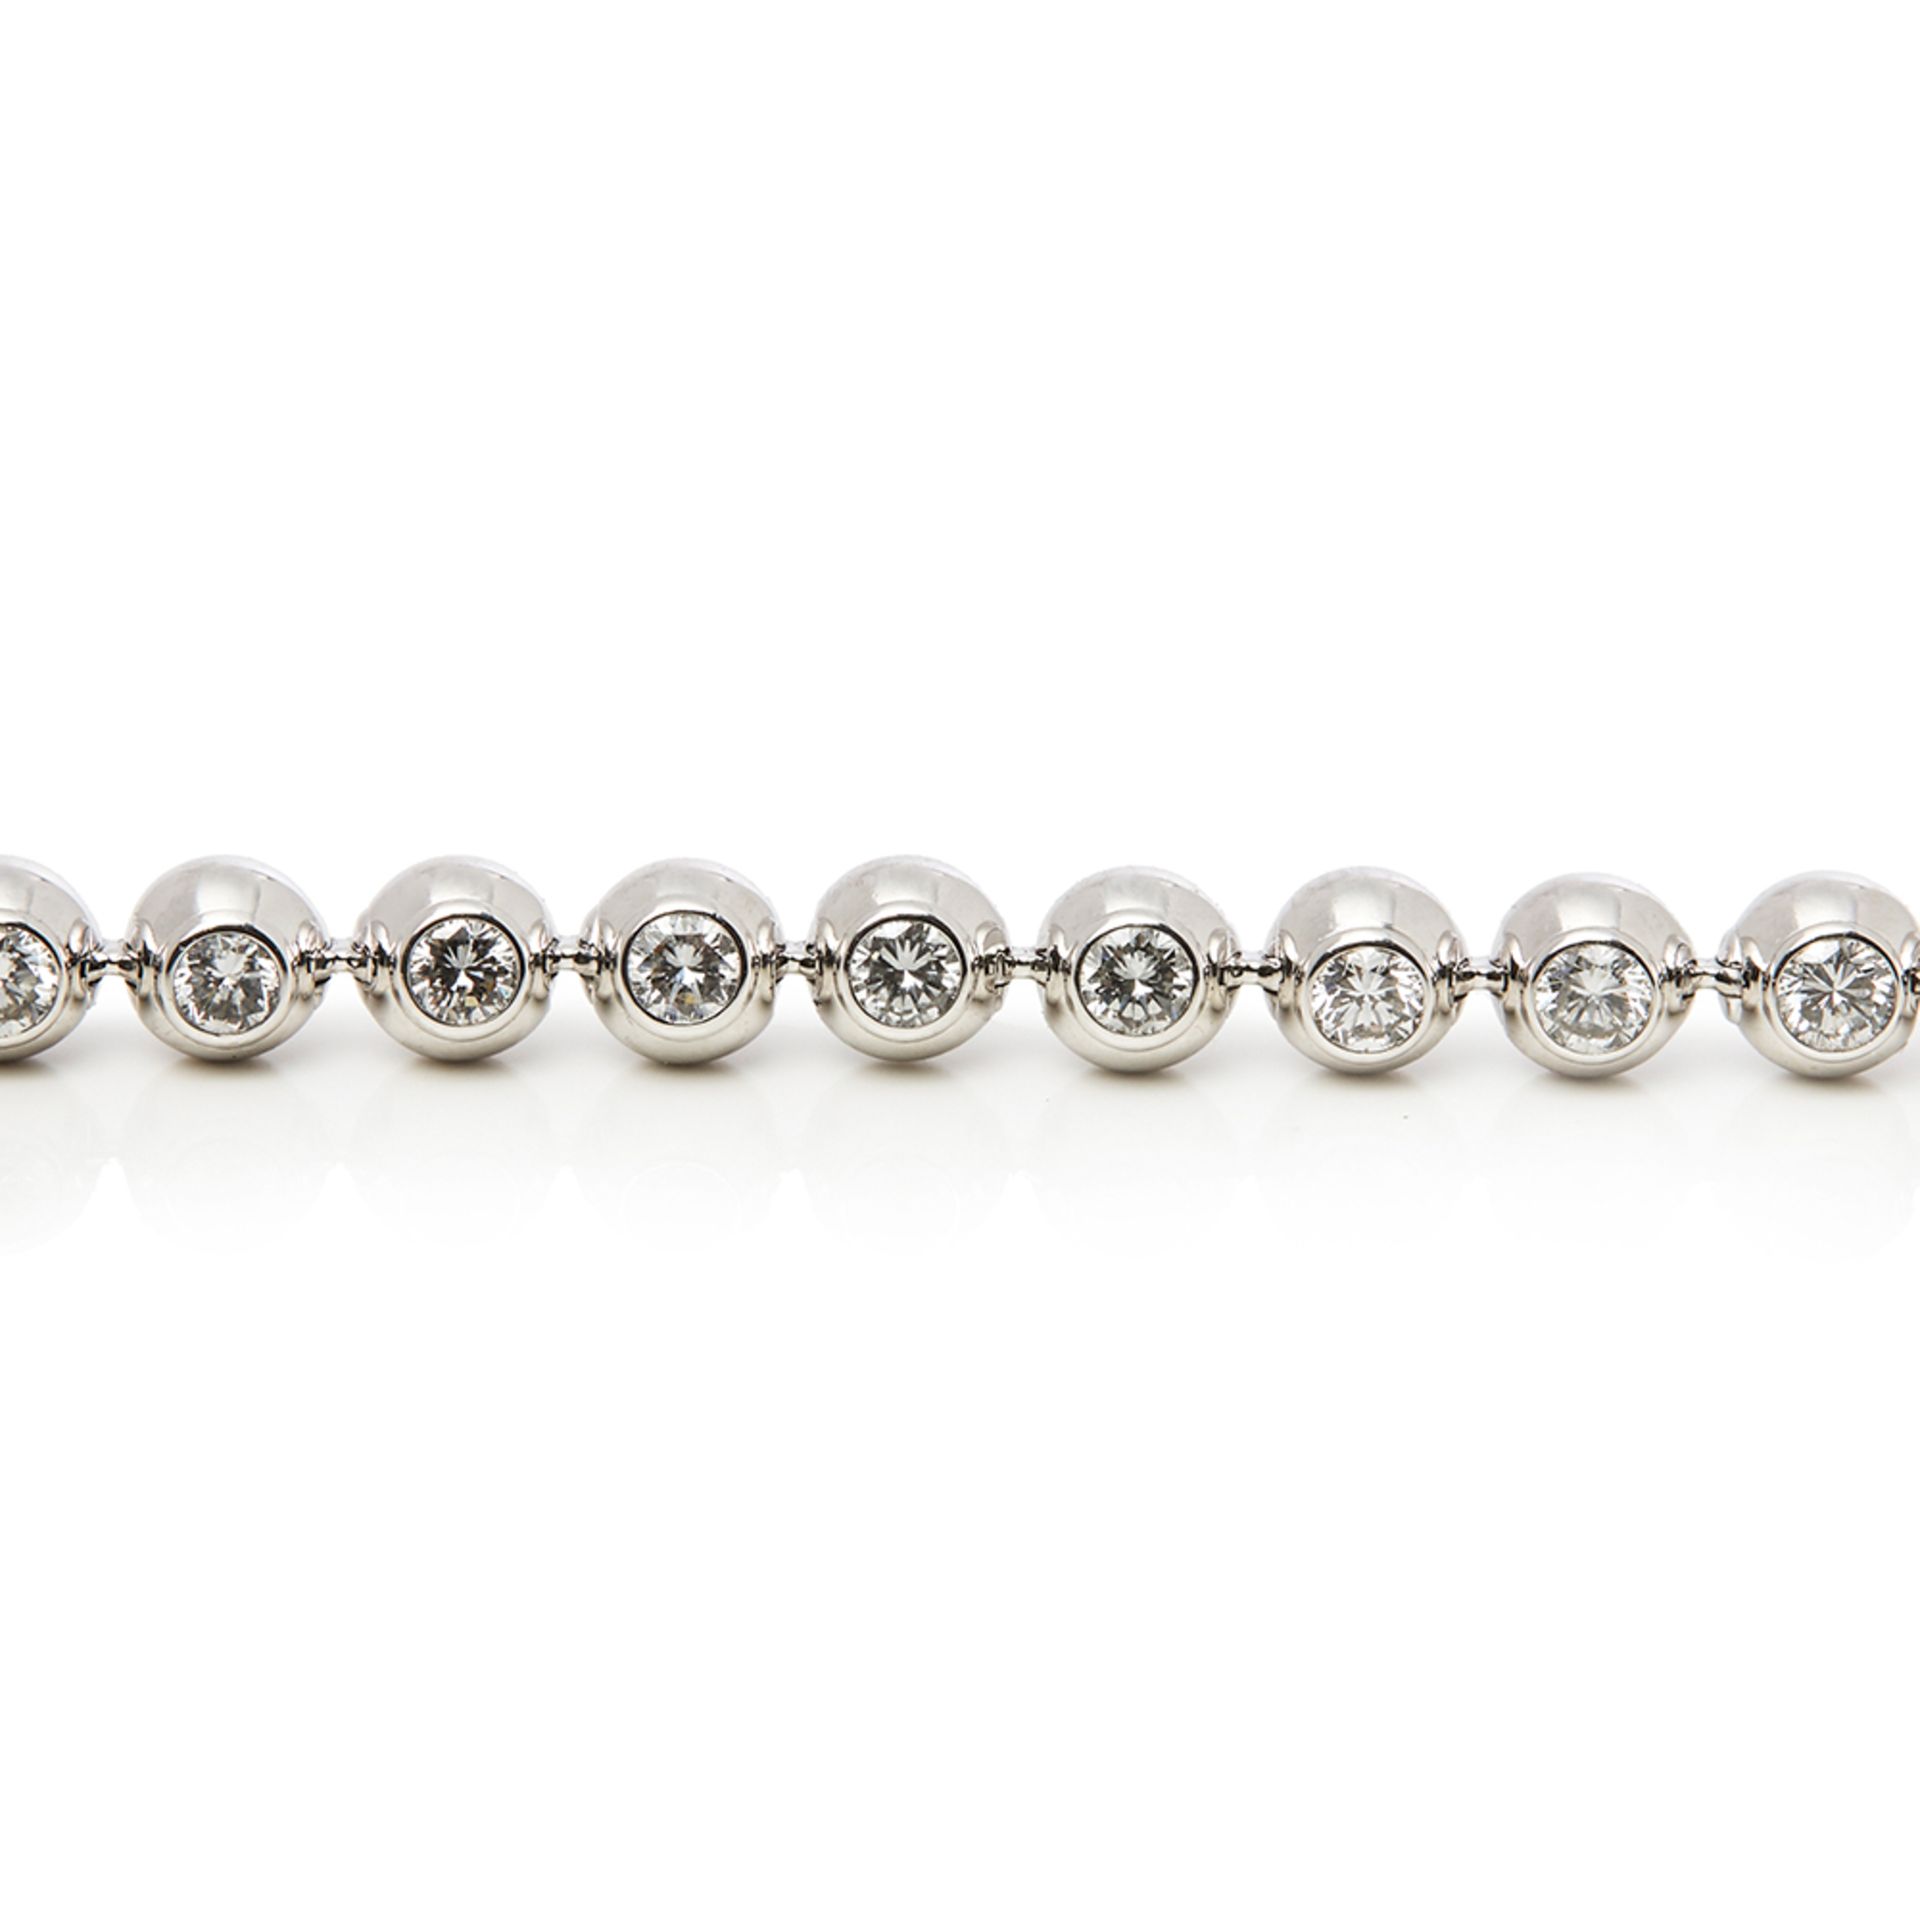 Cartier 18k White Gold Perles de Diamants Bracelet - Image 3 of 8